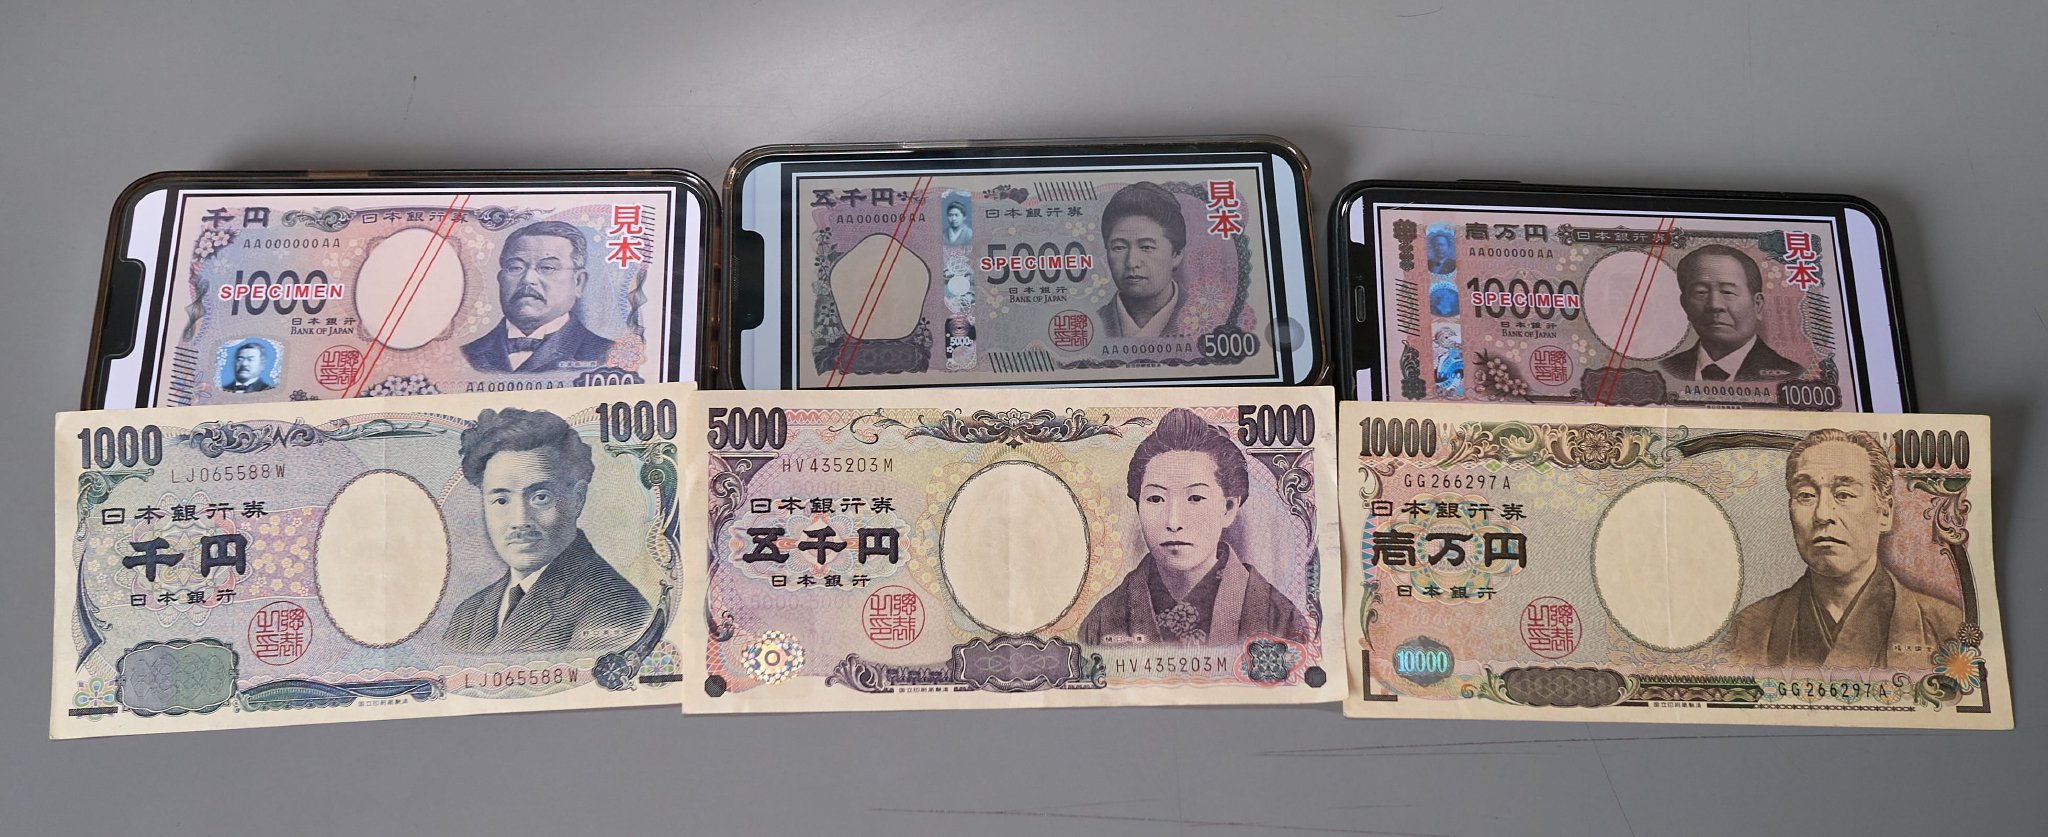 日元兑美元汇率跌至两周低位